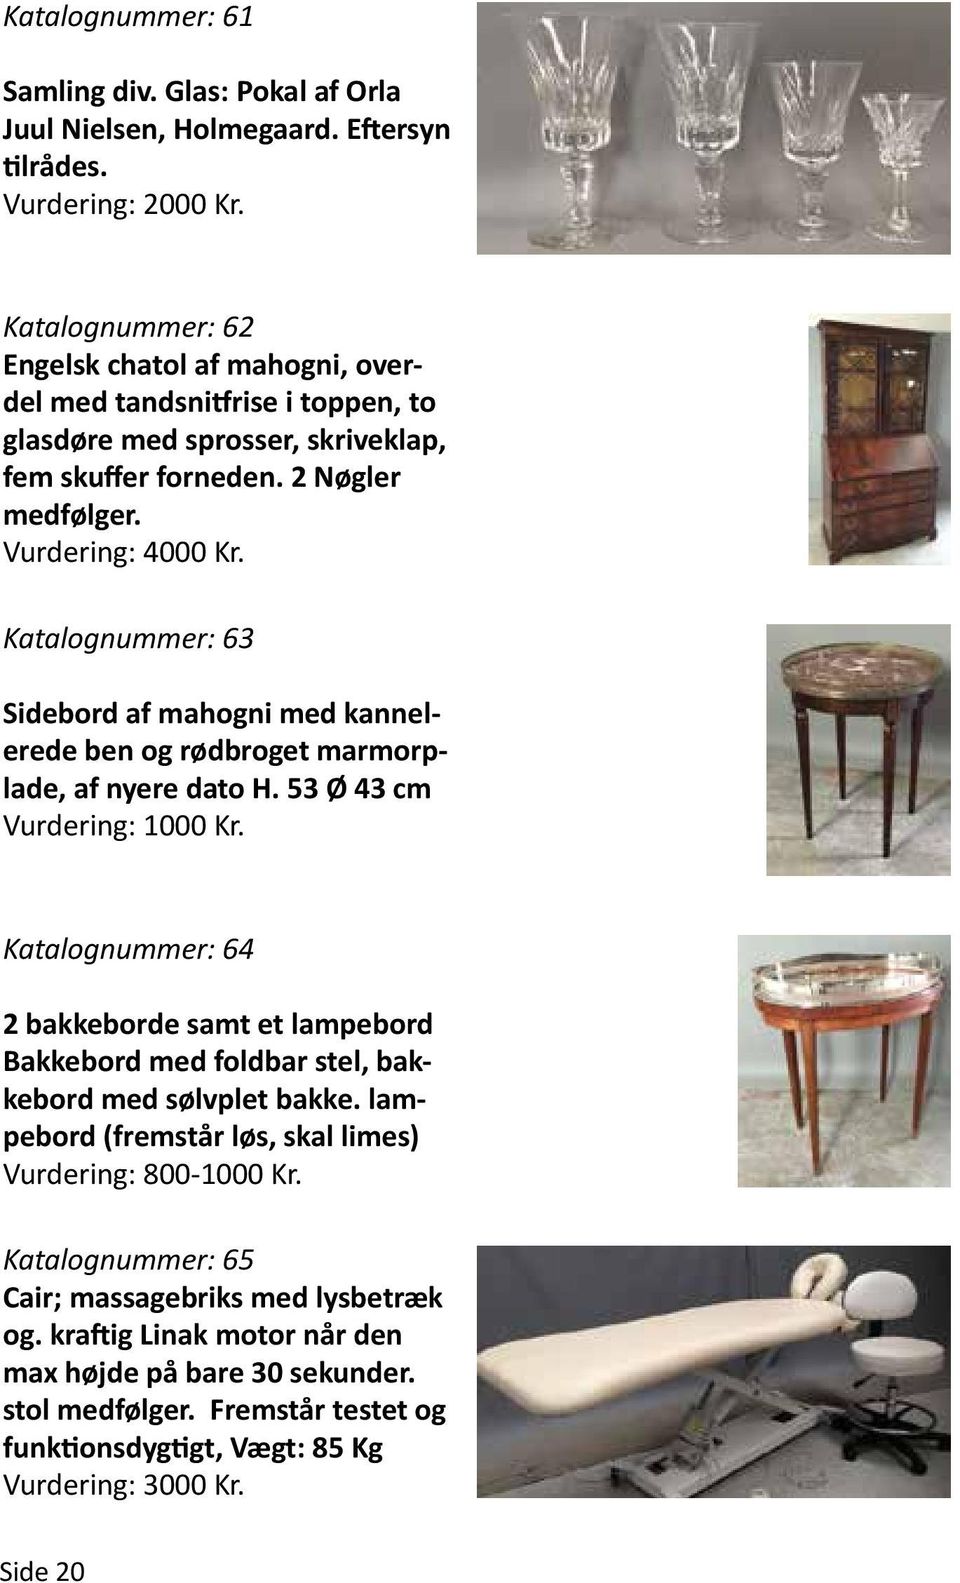 Katalognummer: 63 Sidebord af mahogni med kannelerede ben og rødbroget marmorplade, af nyere dato H.